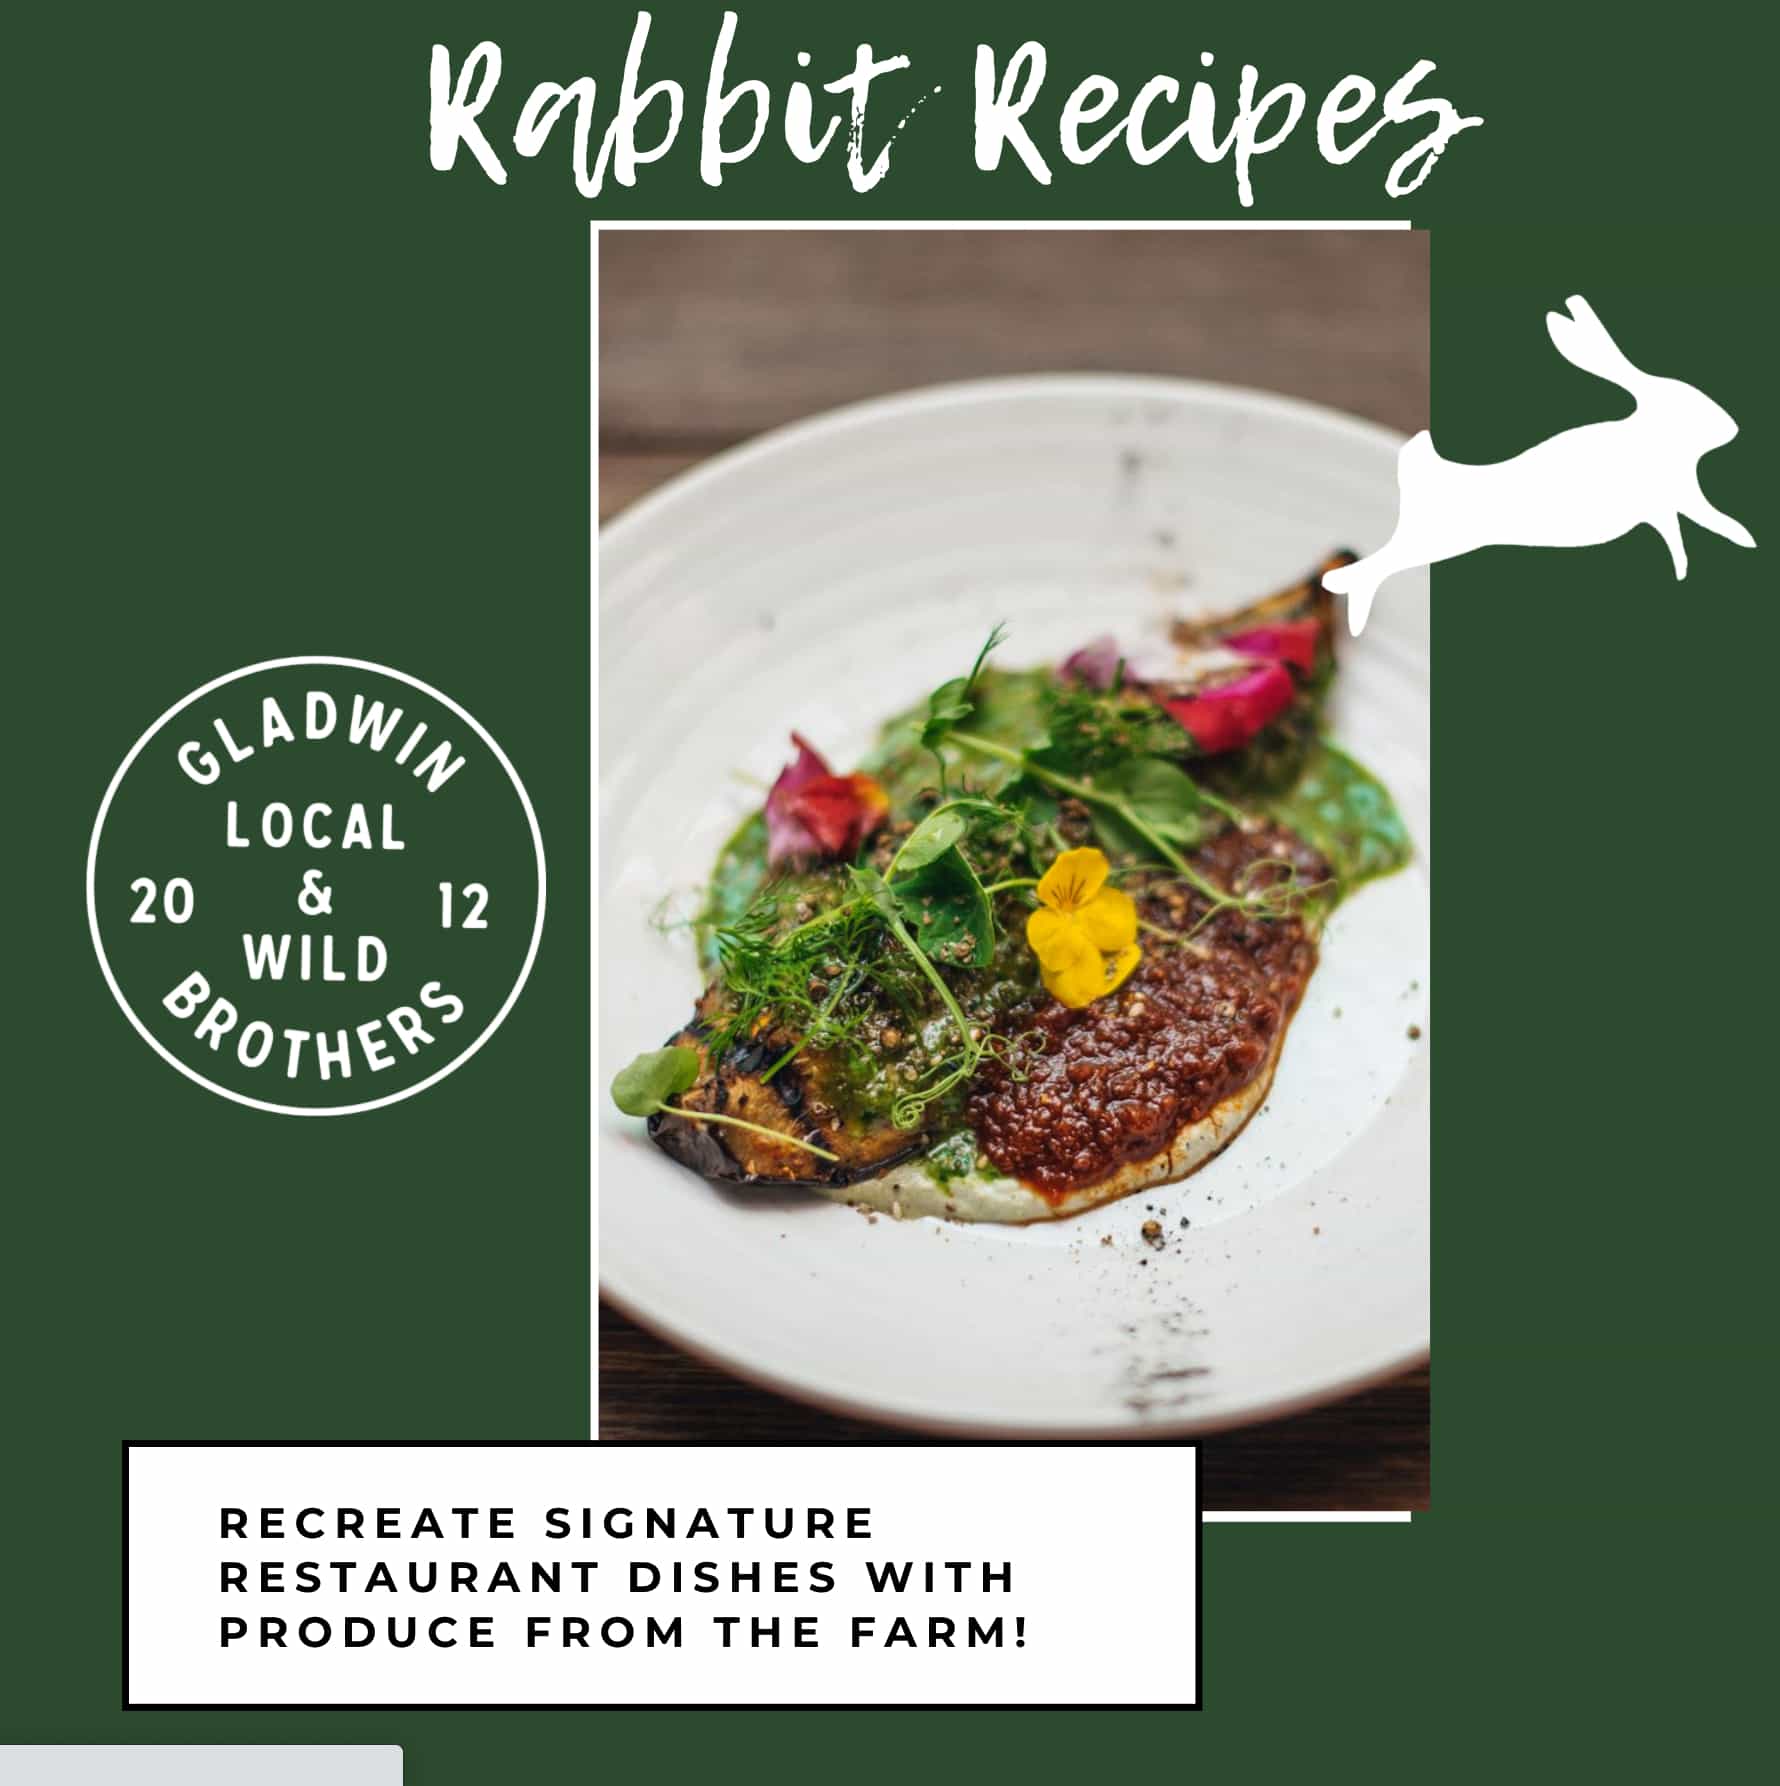 Rabbit Recipes